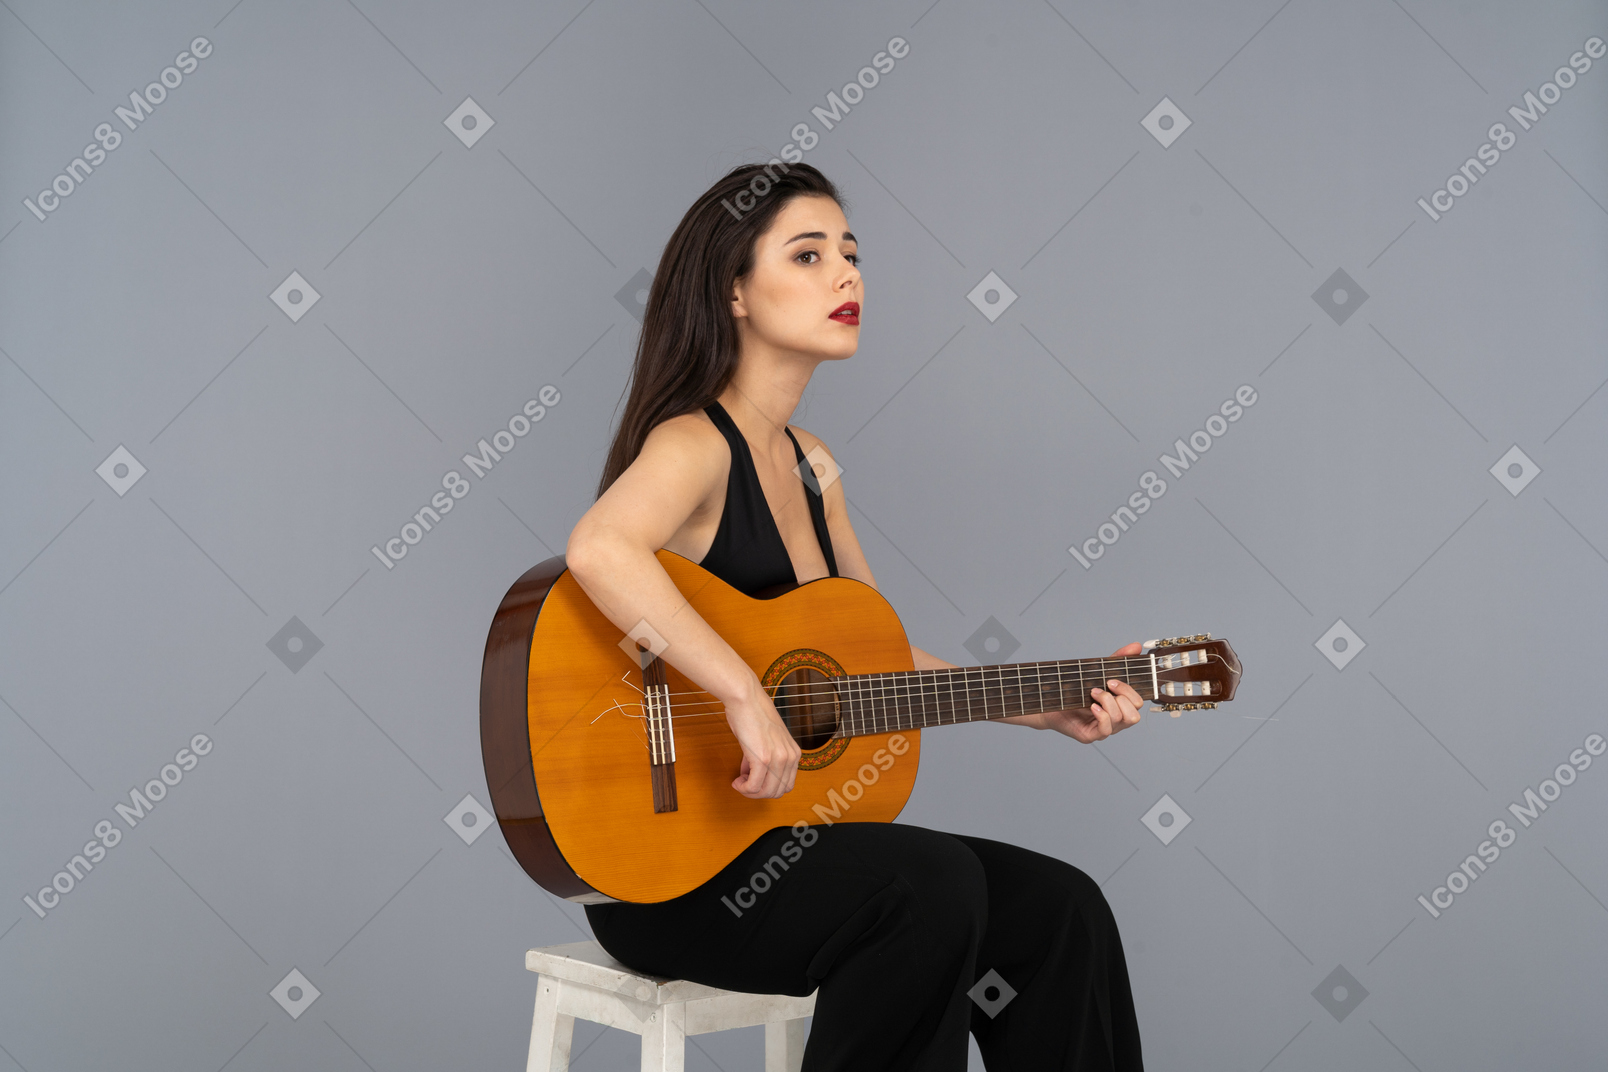 Vista de três quartos de uma jovem sentada de terno preto segurando o violão